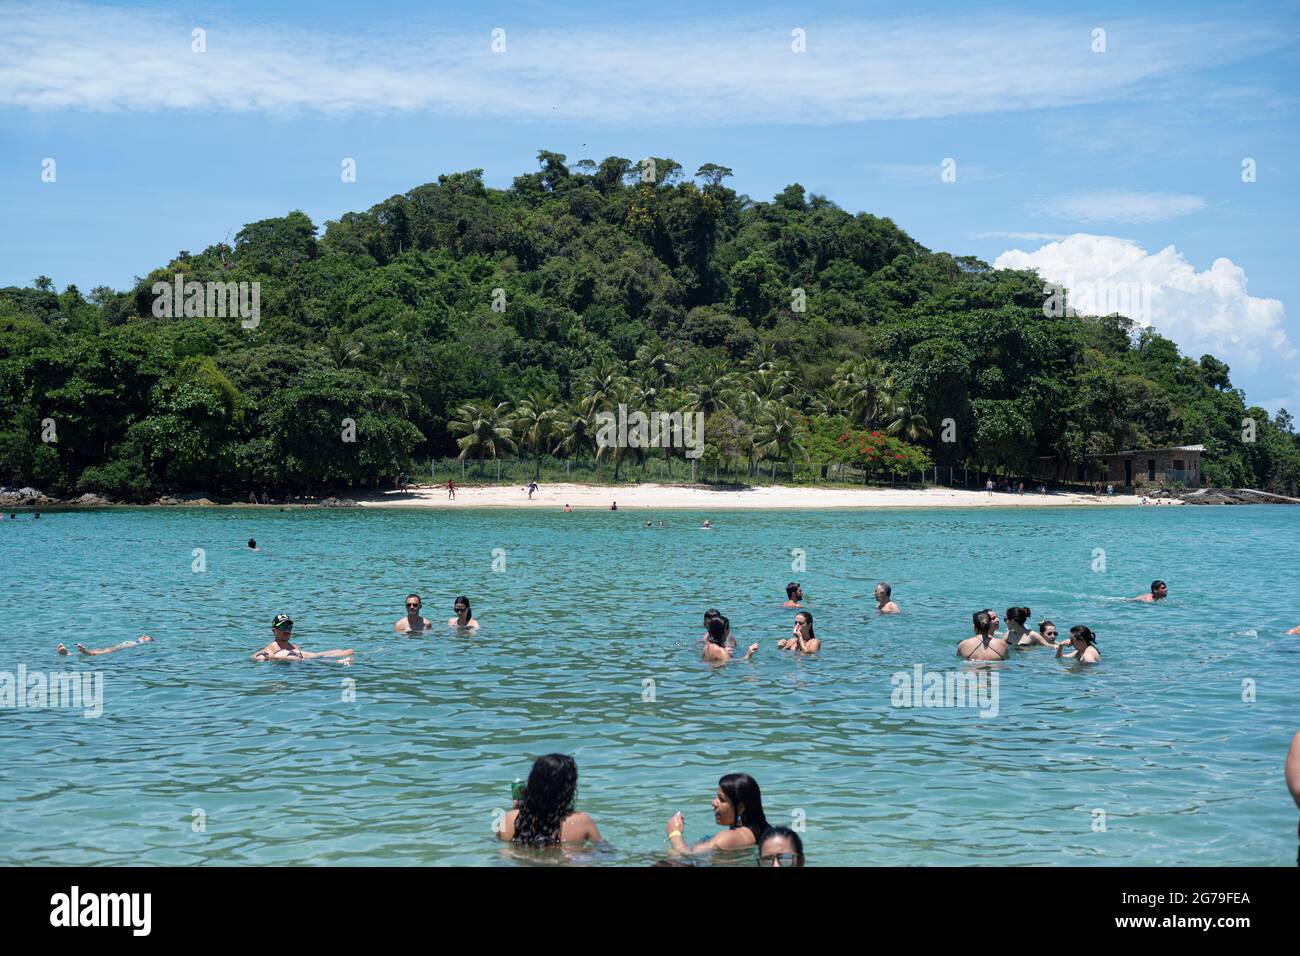 La vie sur la plage de Big Island, Ilha grande , Rio de Janeiro - Brésil Banque D'Images